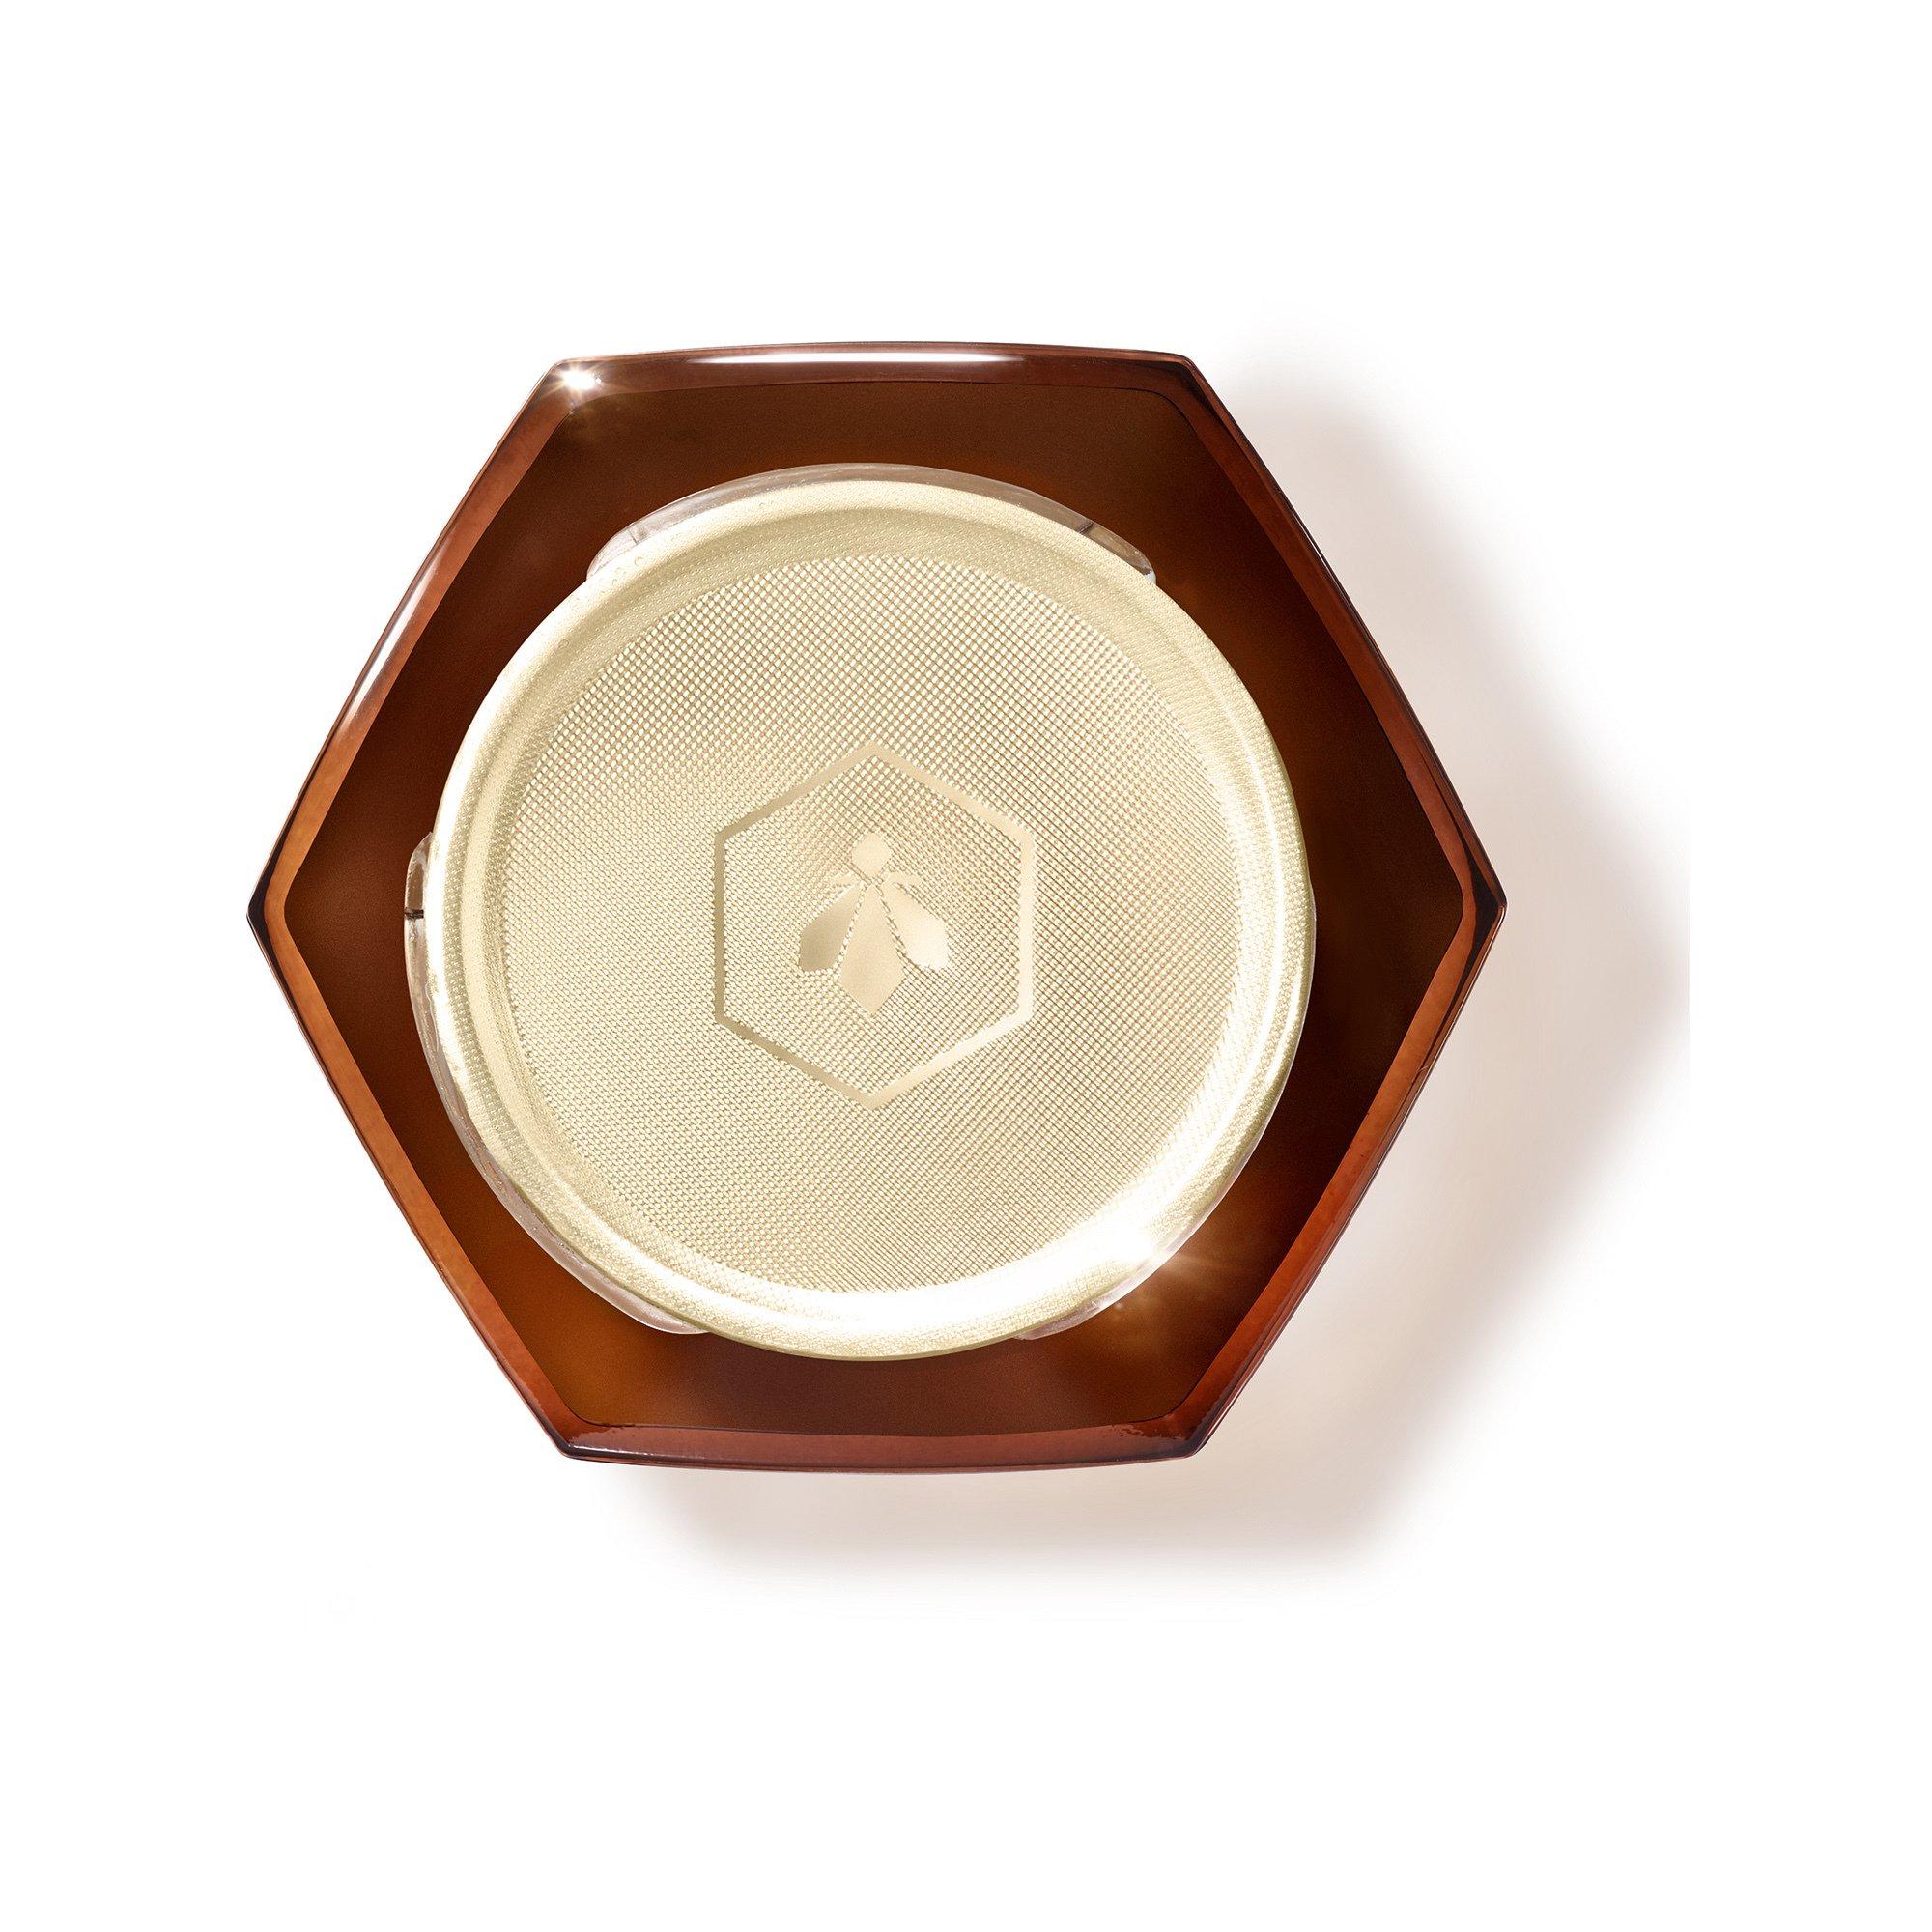 Guerlain ABEILLE ROYALE Abeille Royale Honey Treatment Crema Notte - La Ricarica 